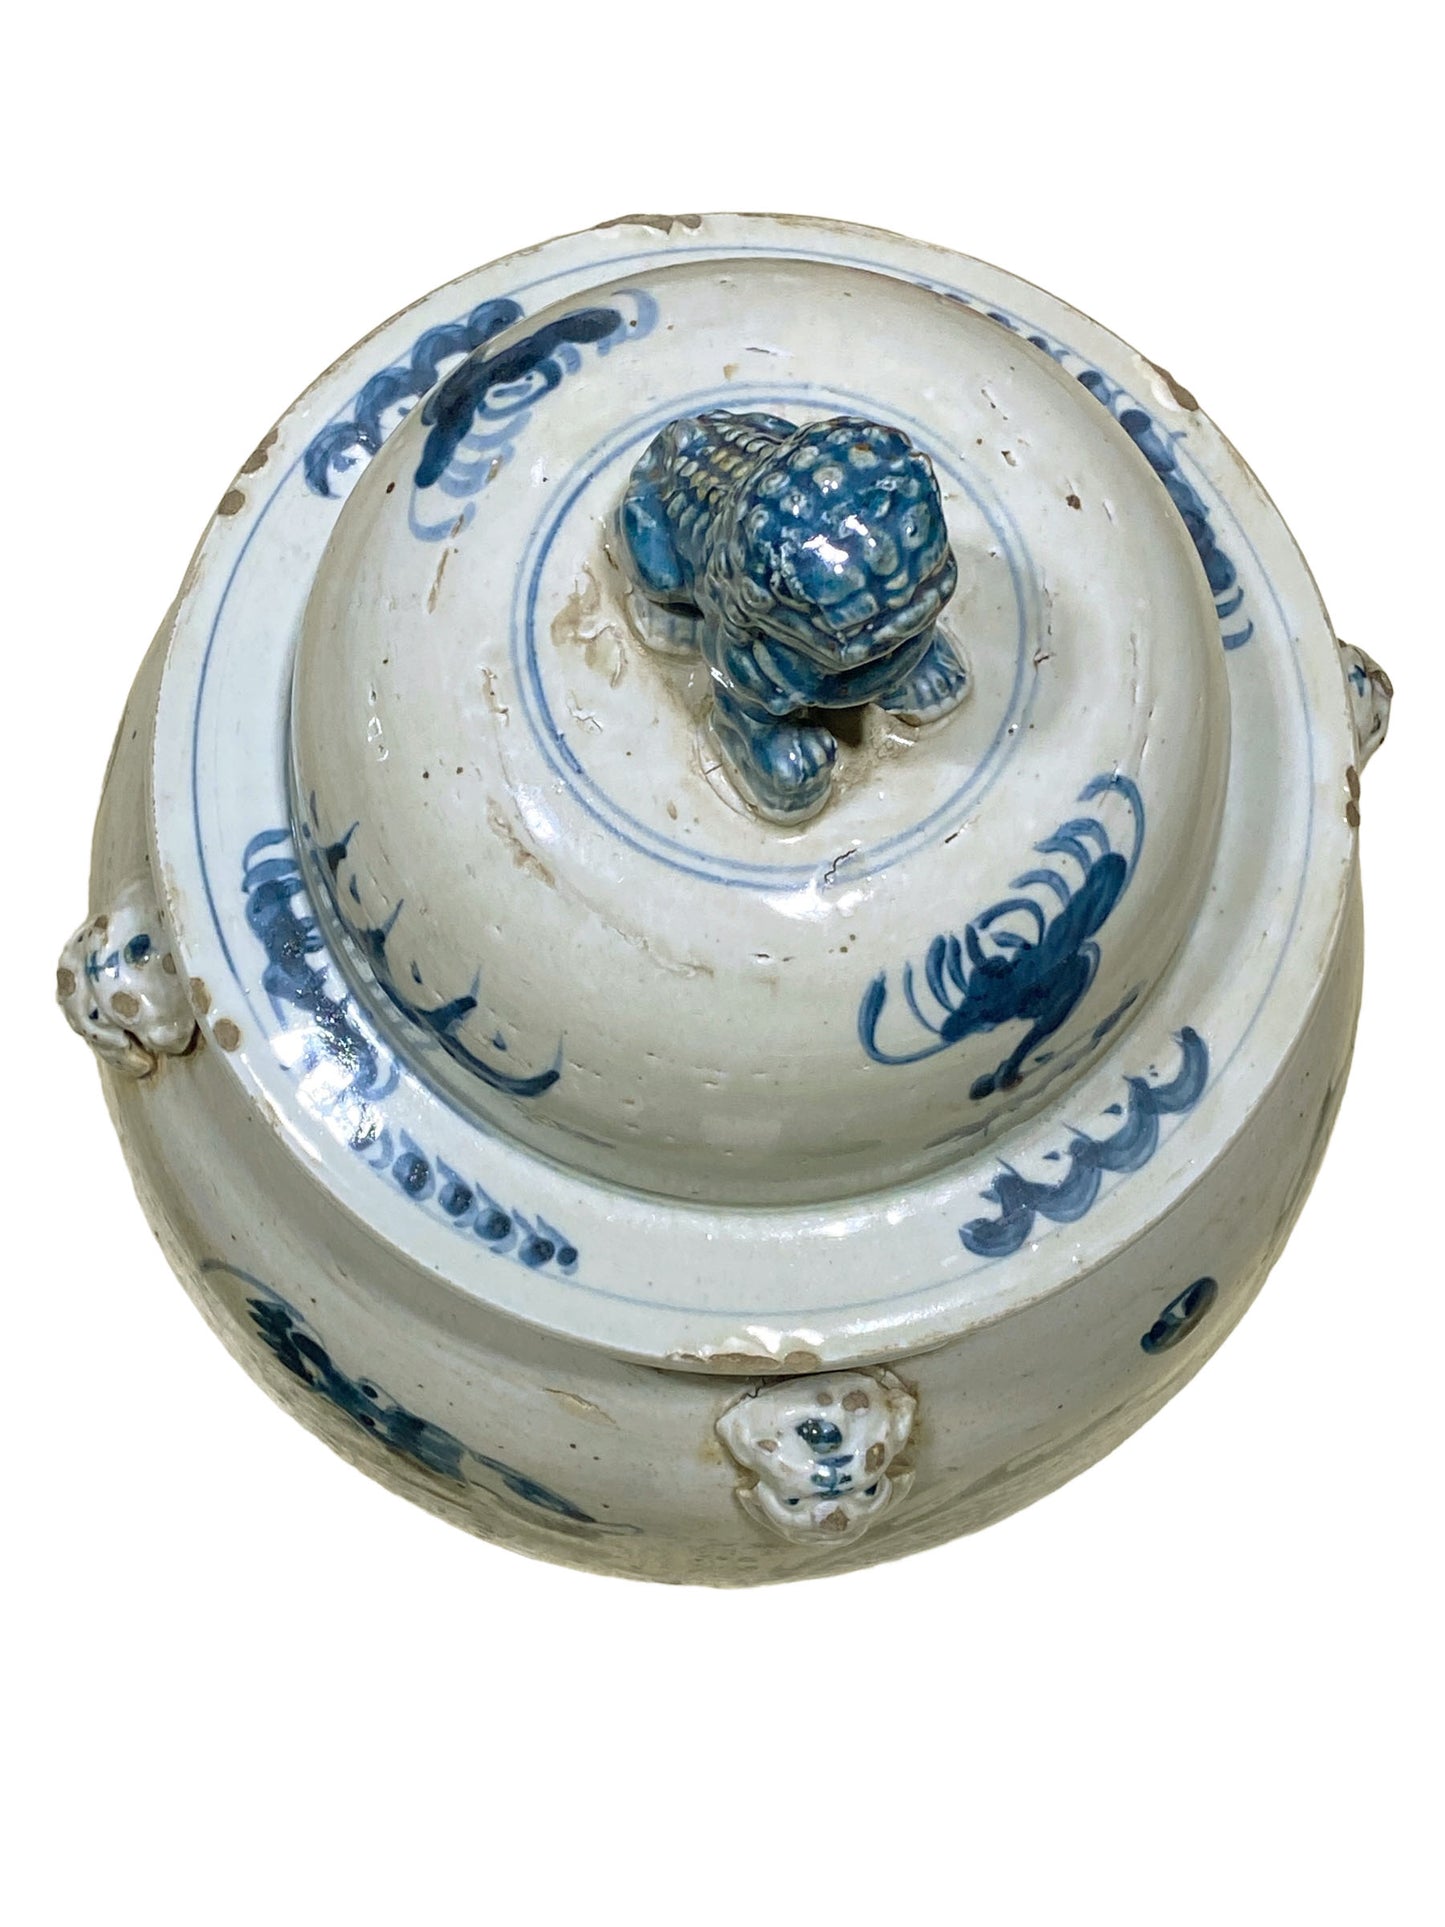 #3163 Lg Chinoiserie Blue & White Porcelain Dragons Ginger Jar, 24" H